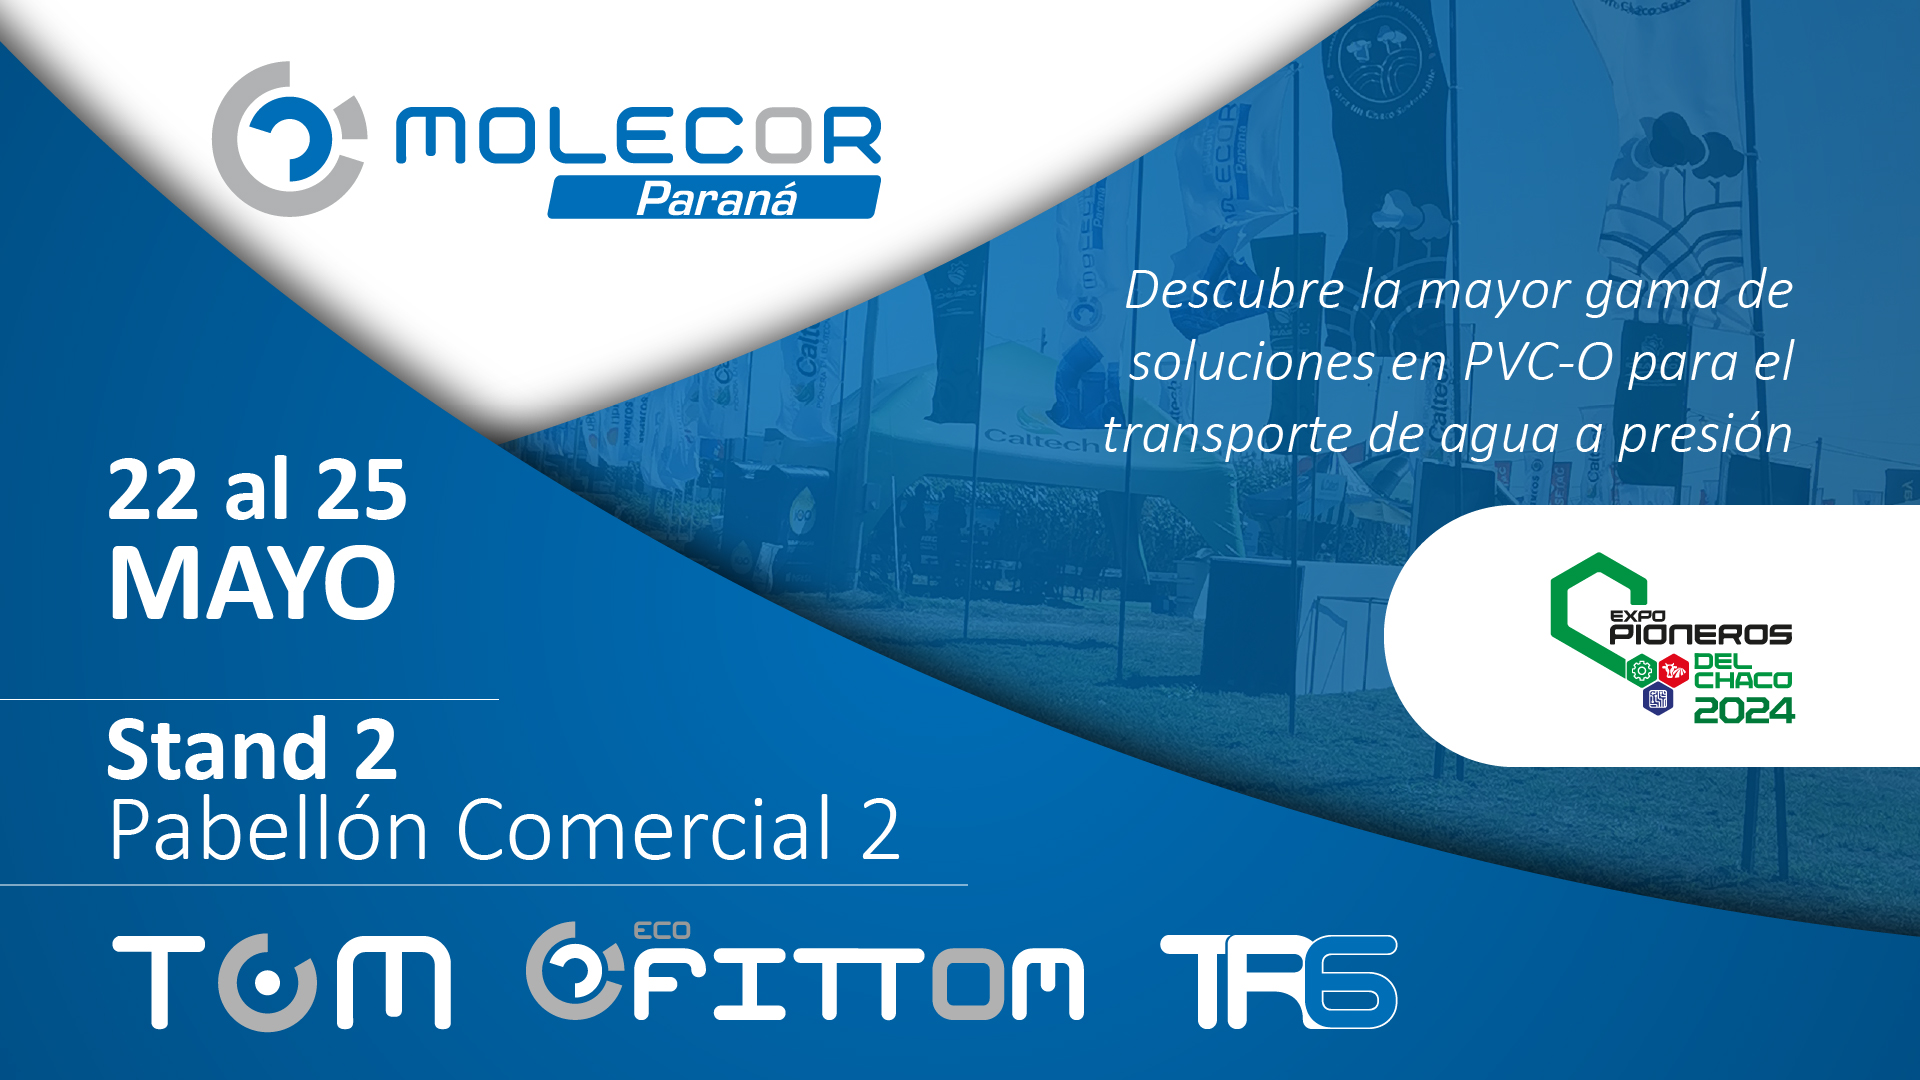 Molecor Paraná participa en Expo Pioneros del Chaco 2024 con una amplia gama de soluciones